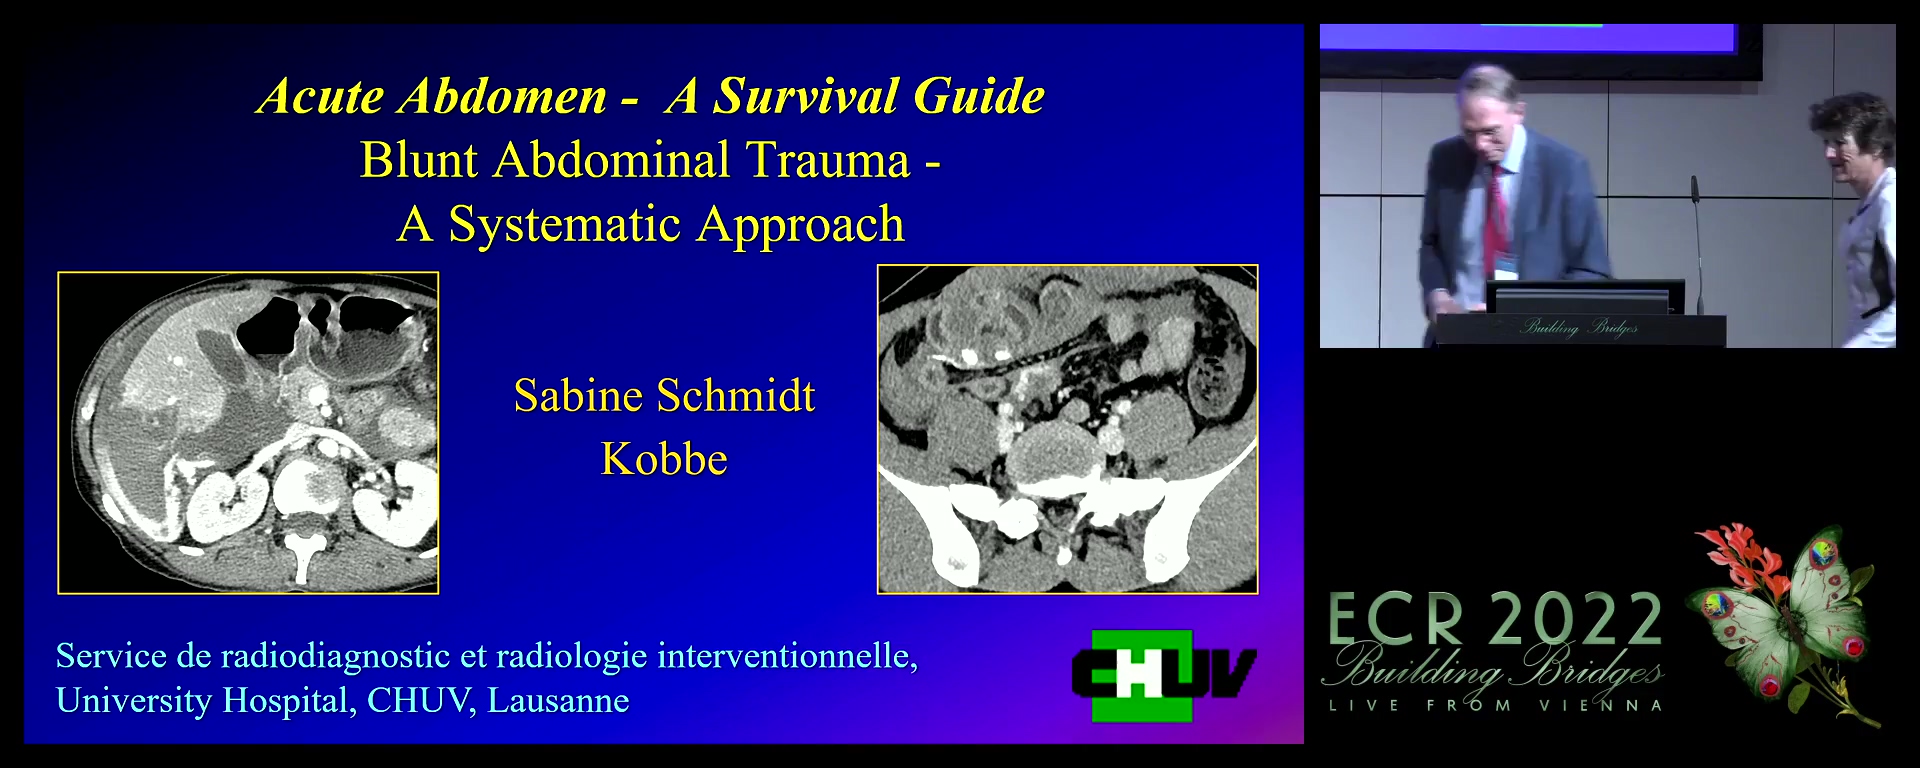 Blunt abdominal trauma: a systematic approach